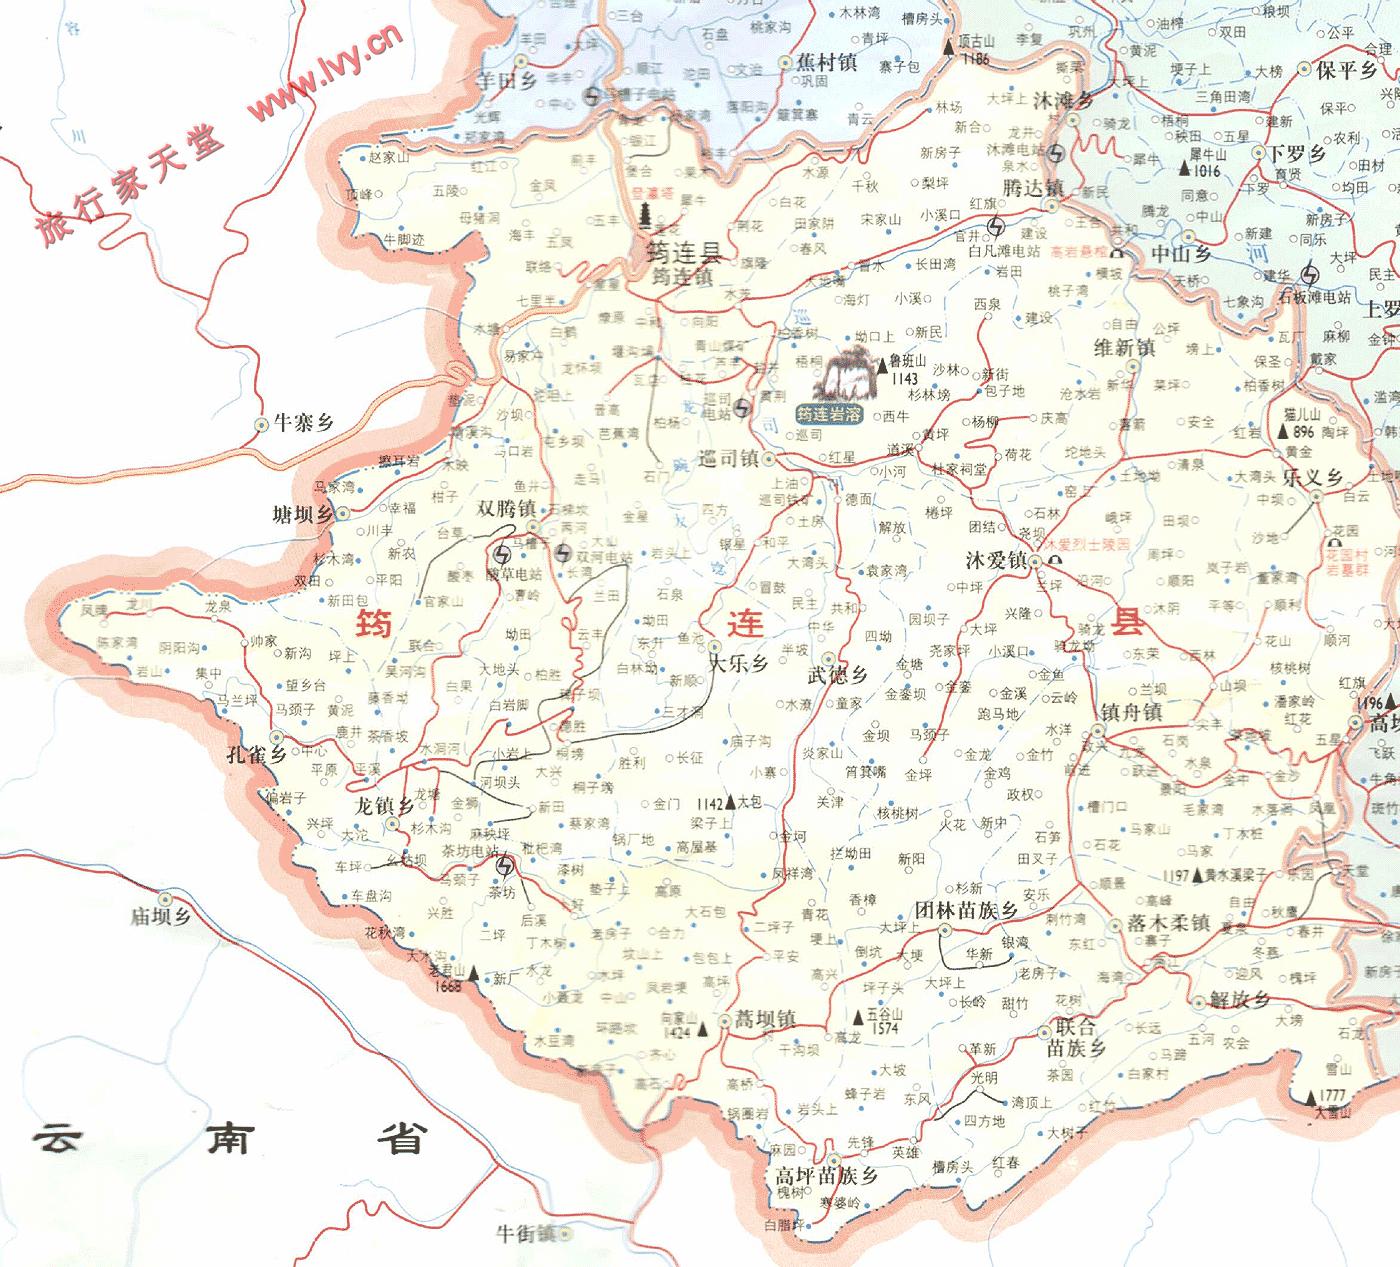 地图窝 中国 四川 宜宾  (长按地图可以放大,保存,分享)